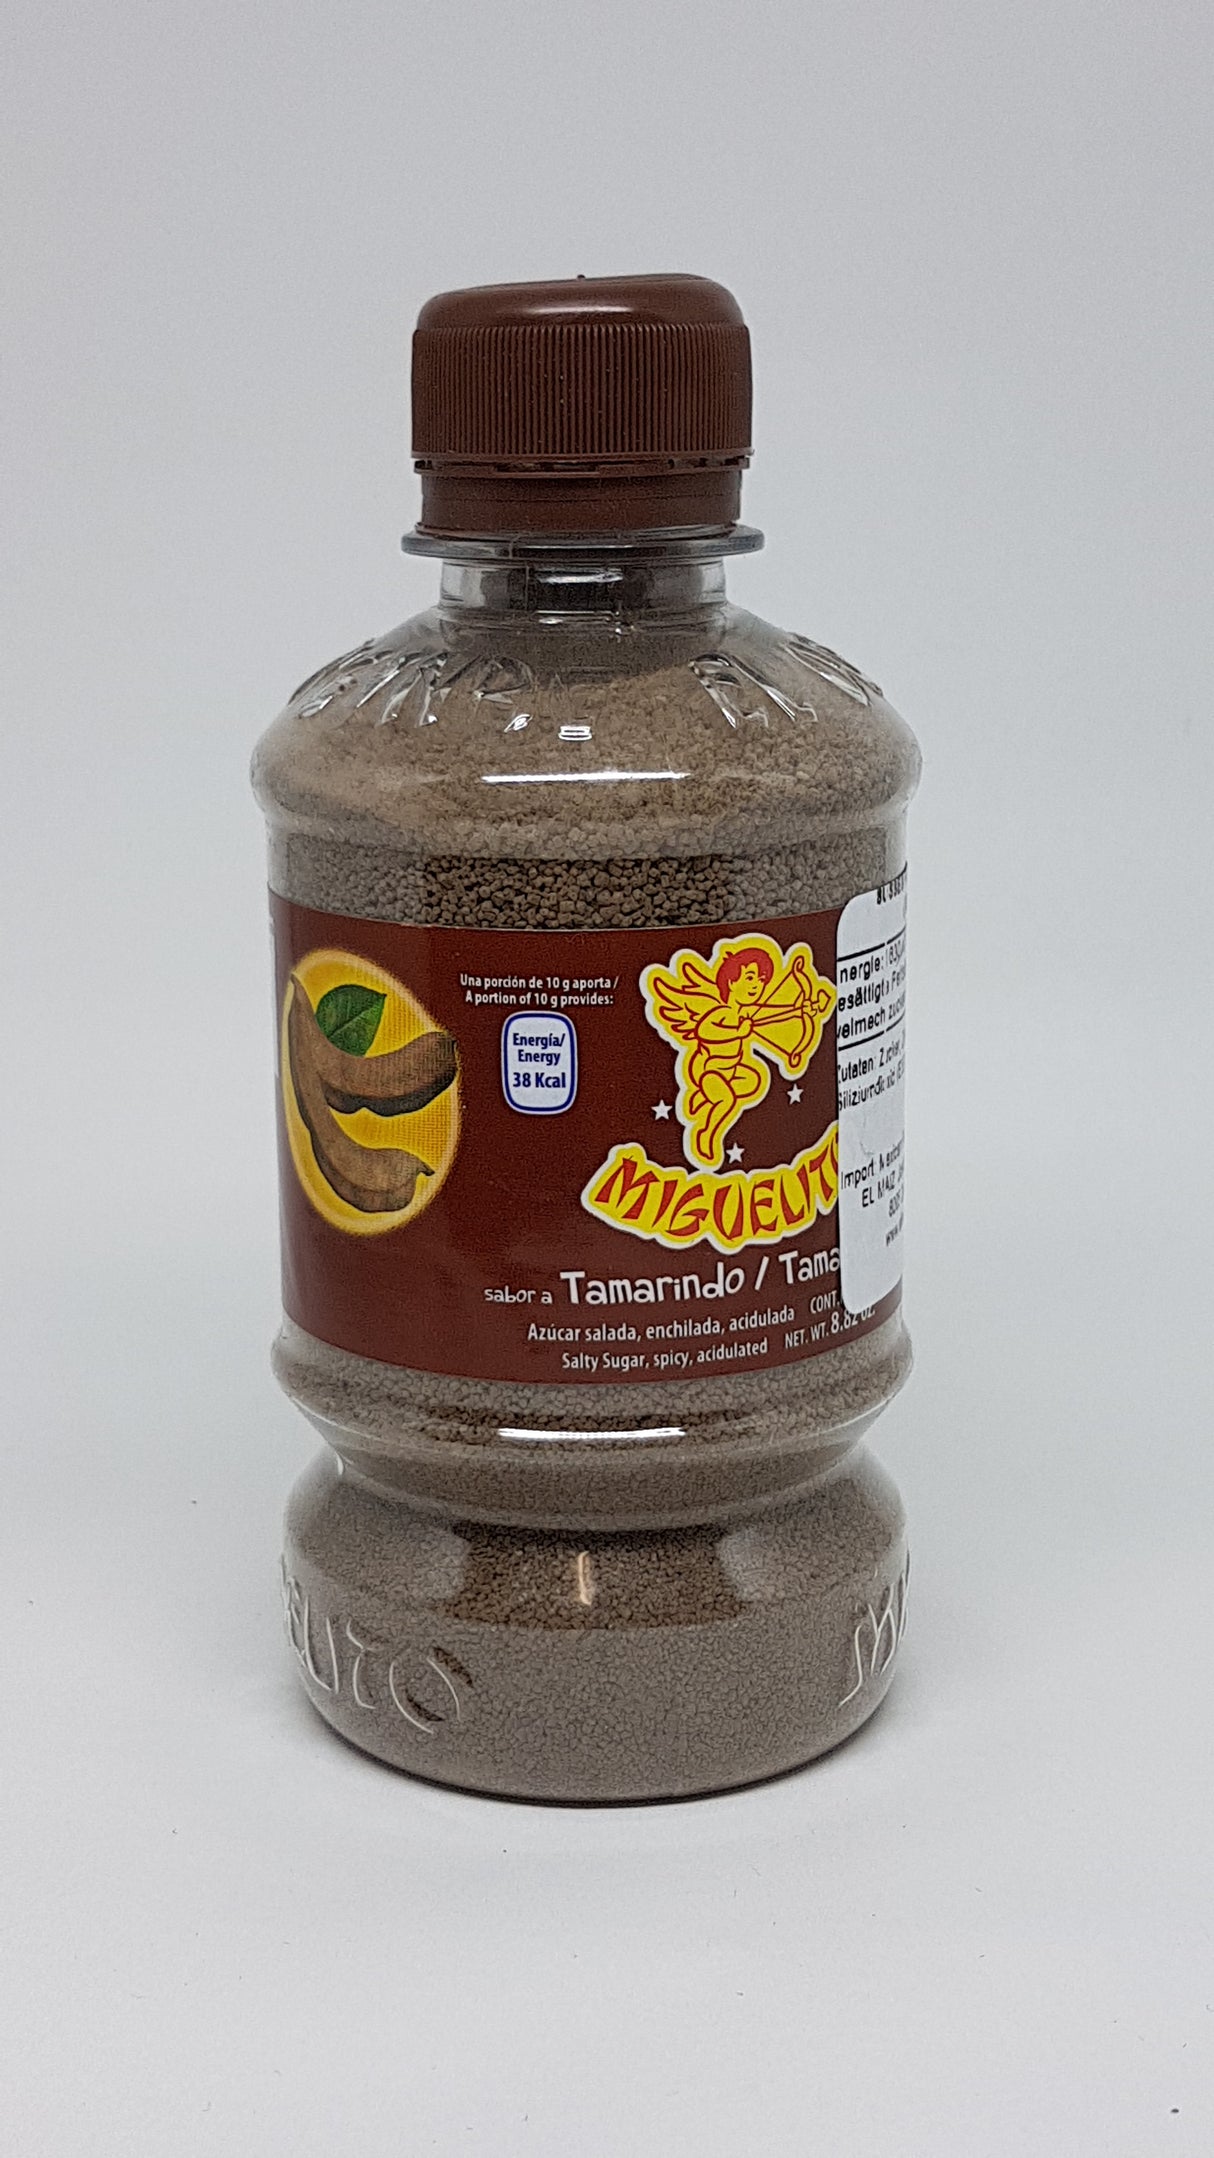 Botella de Miguelito en polvo Tamarindo 250 gr